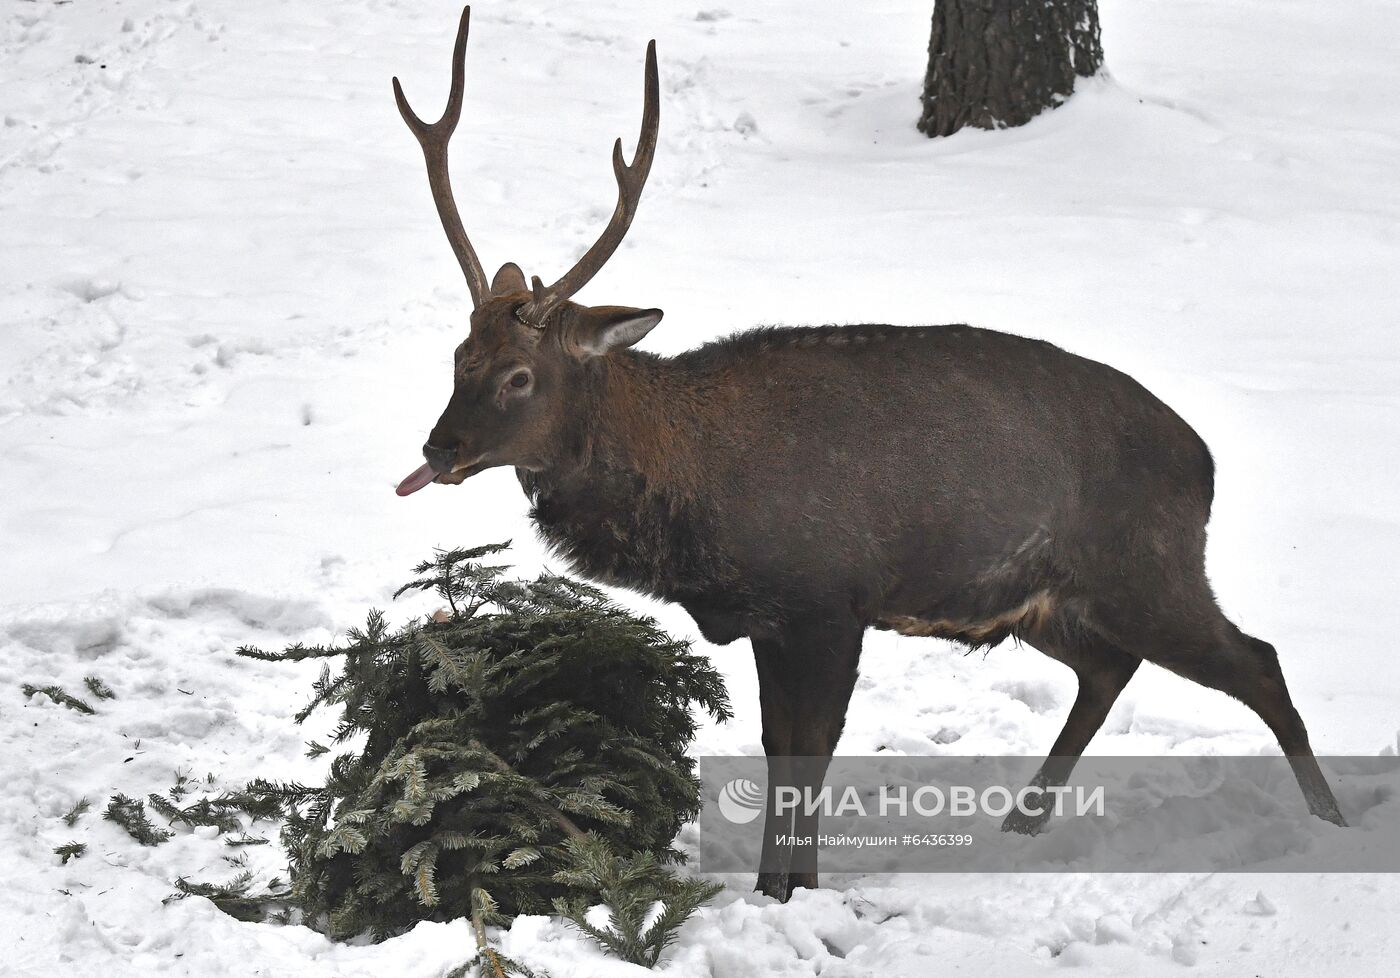 Утилизация новогодних елок в красноярском зоопарке